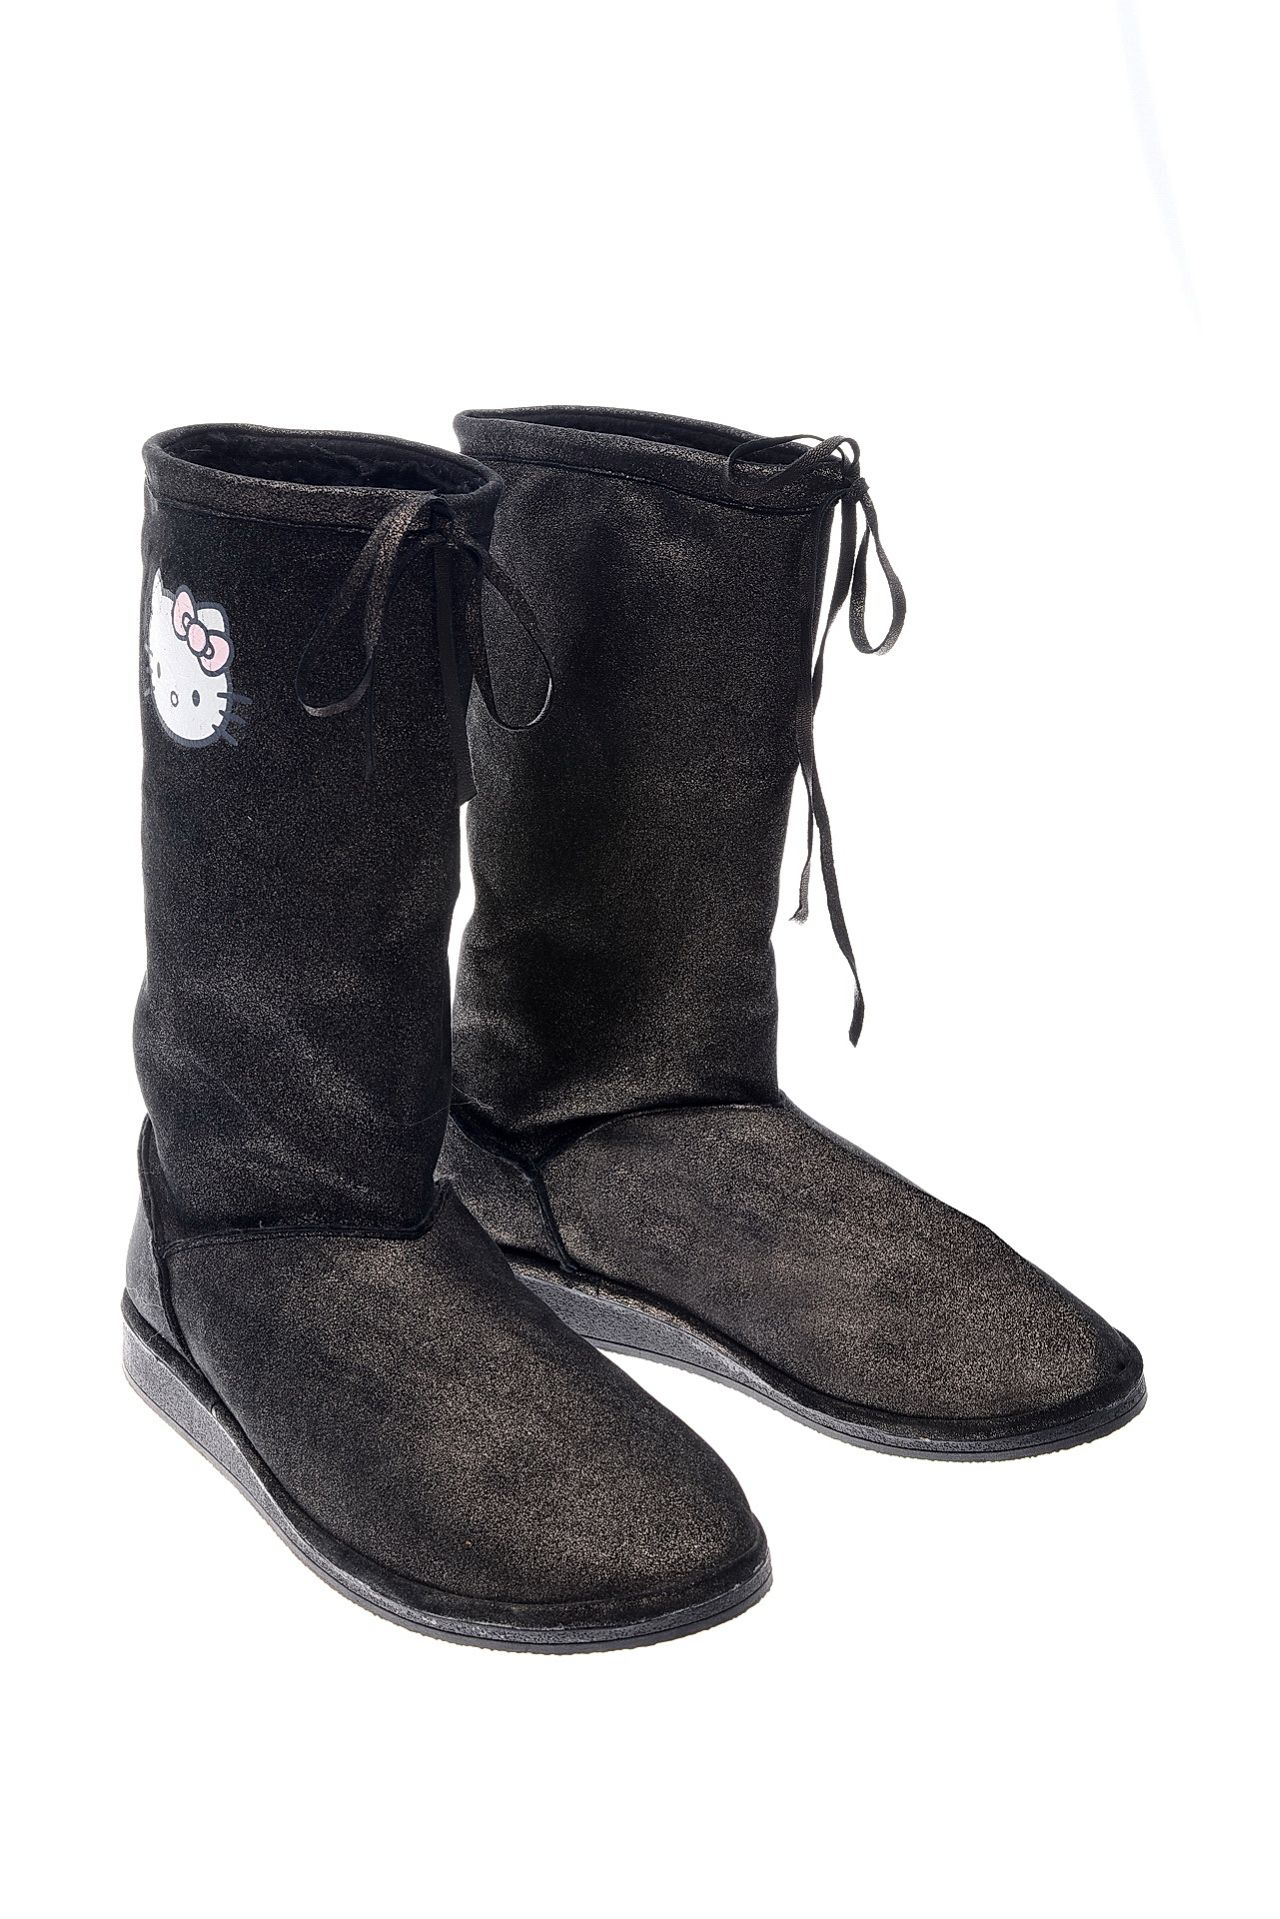 Обувь женская Сапоги VICTORIA COUTURE (SF8W20/11.1). Купить за 8250 руб.